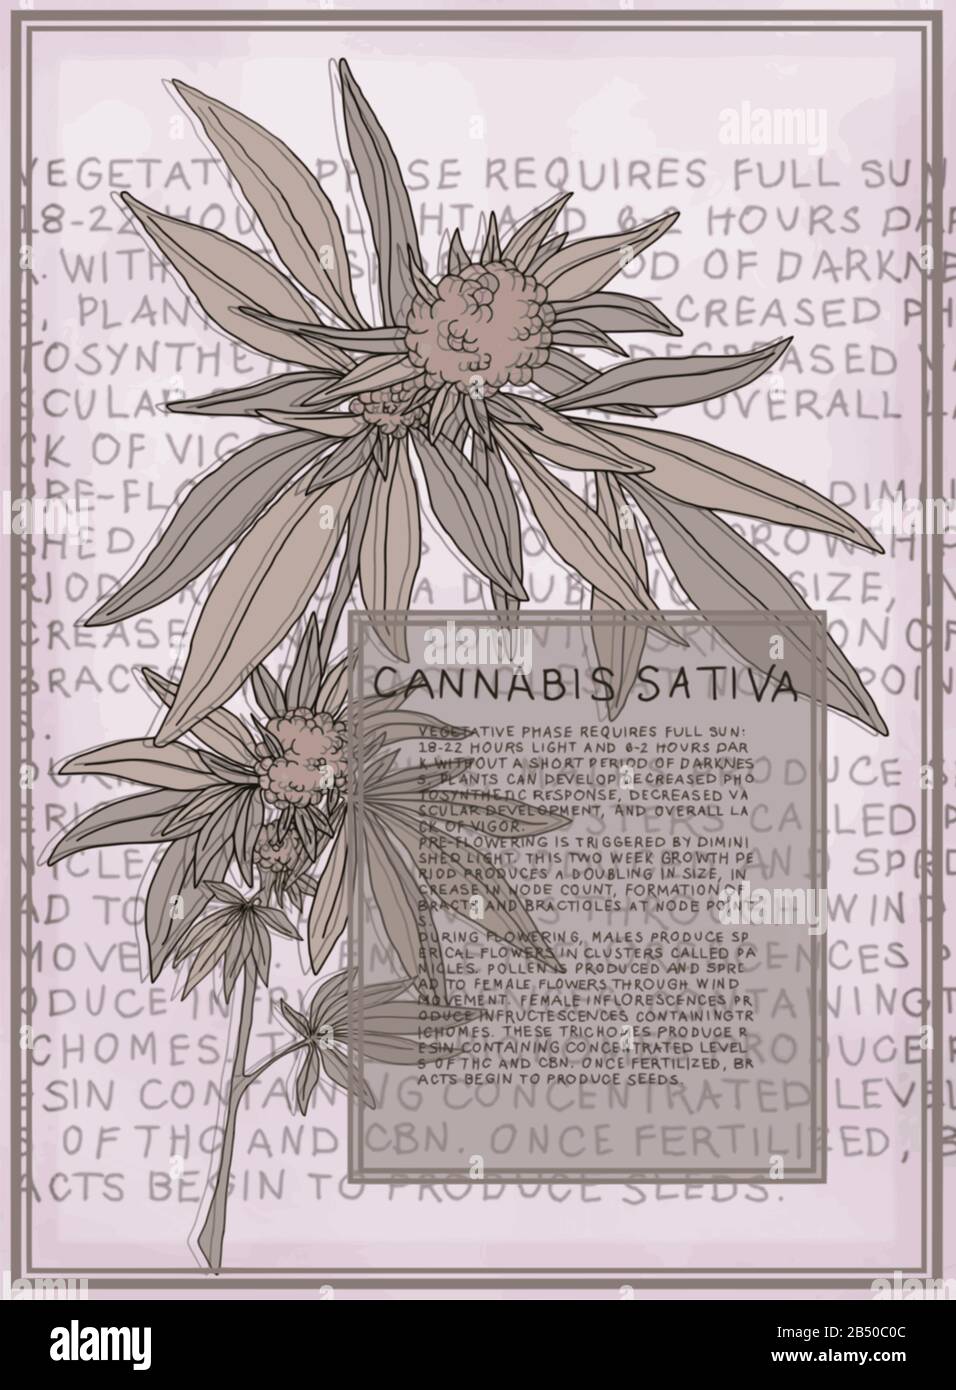 Antica illustrazione botanica della pianta di Cannabis Sativa. Grafica vettoriale scalabile per poster di grandi dimensioni. Il testo descrive le fasi di fioritura della pianta. Illustrazione Vettoriale